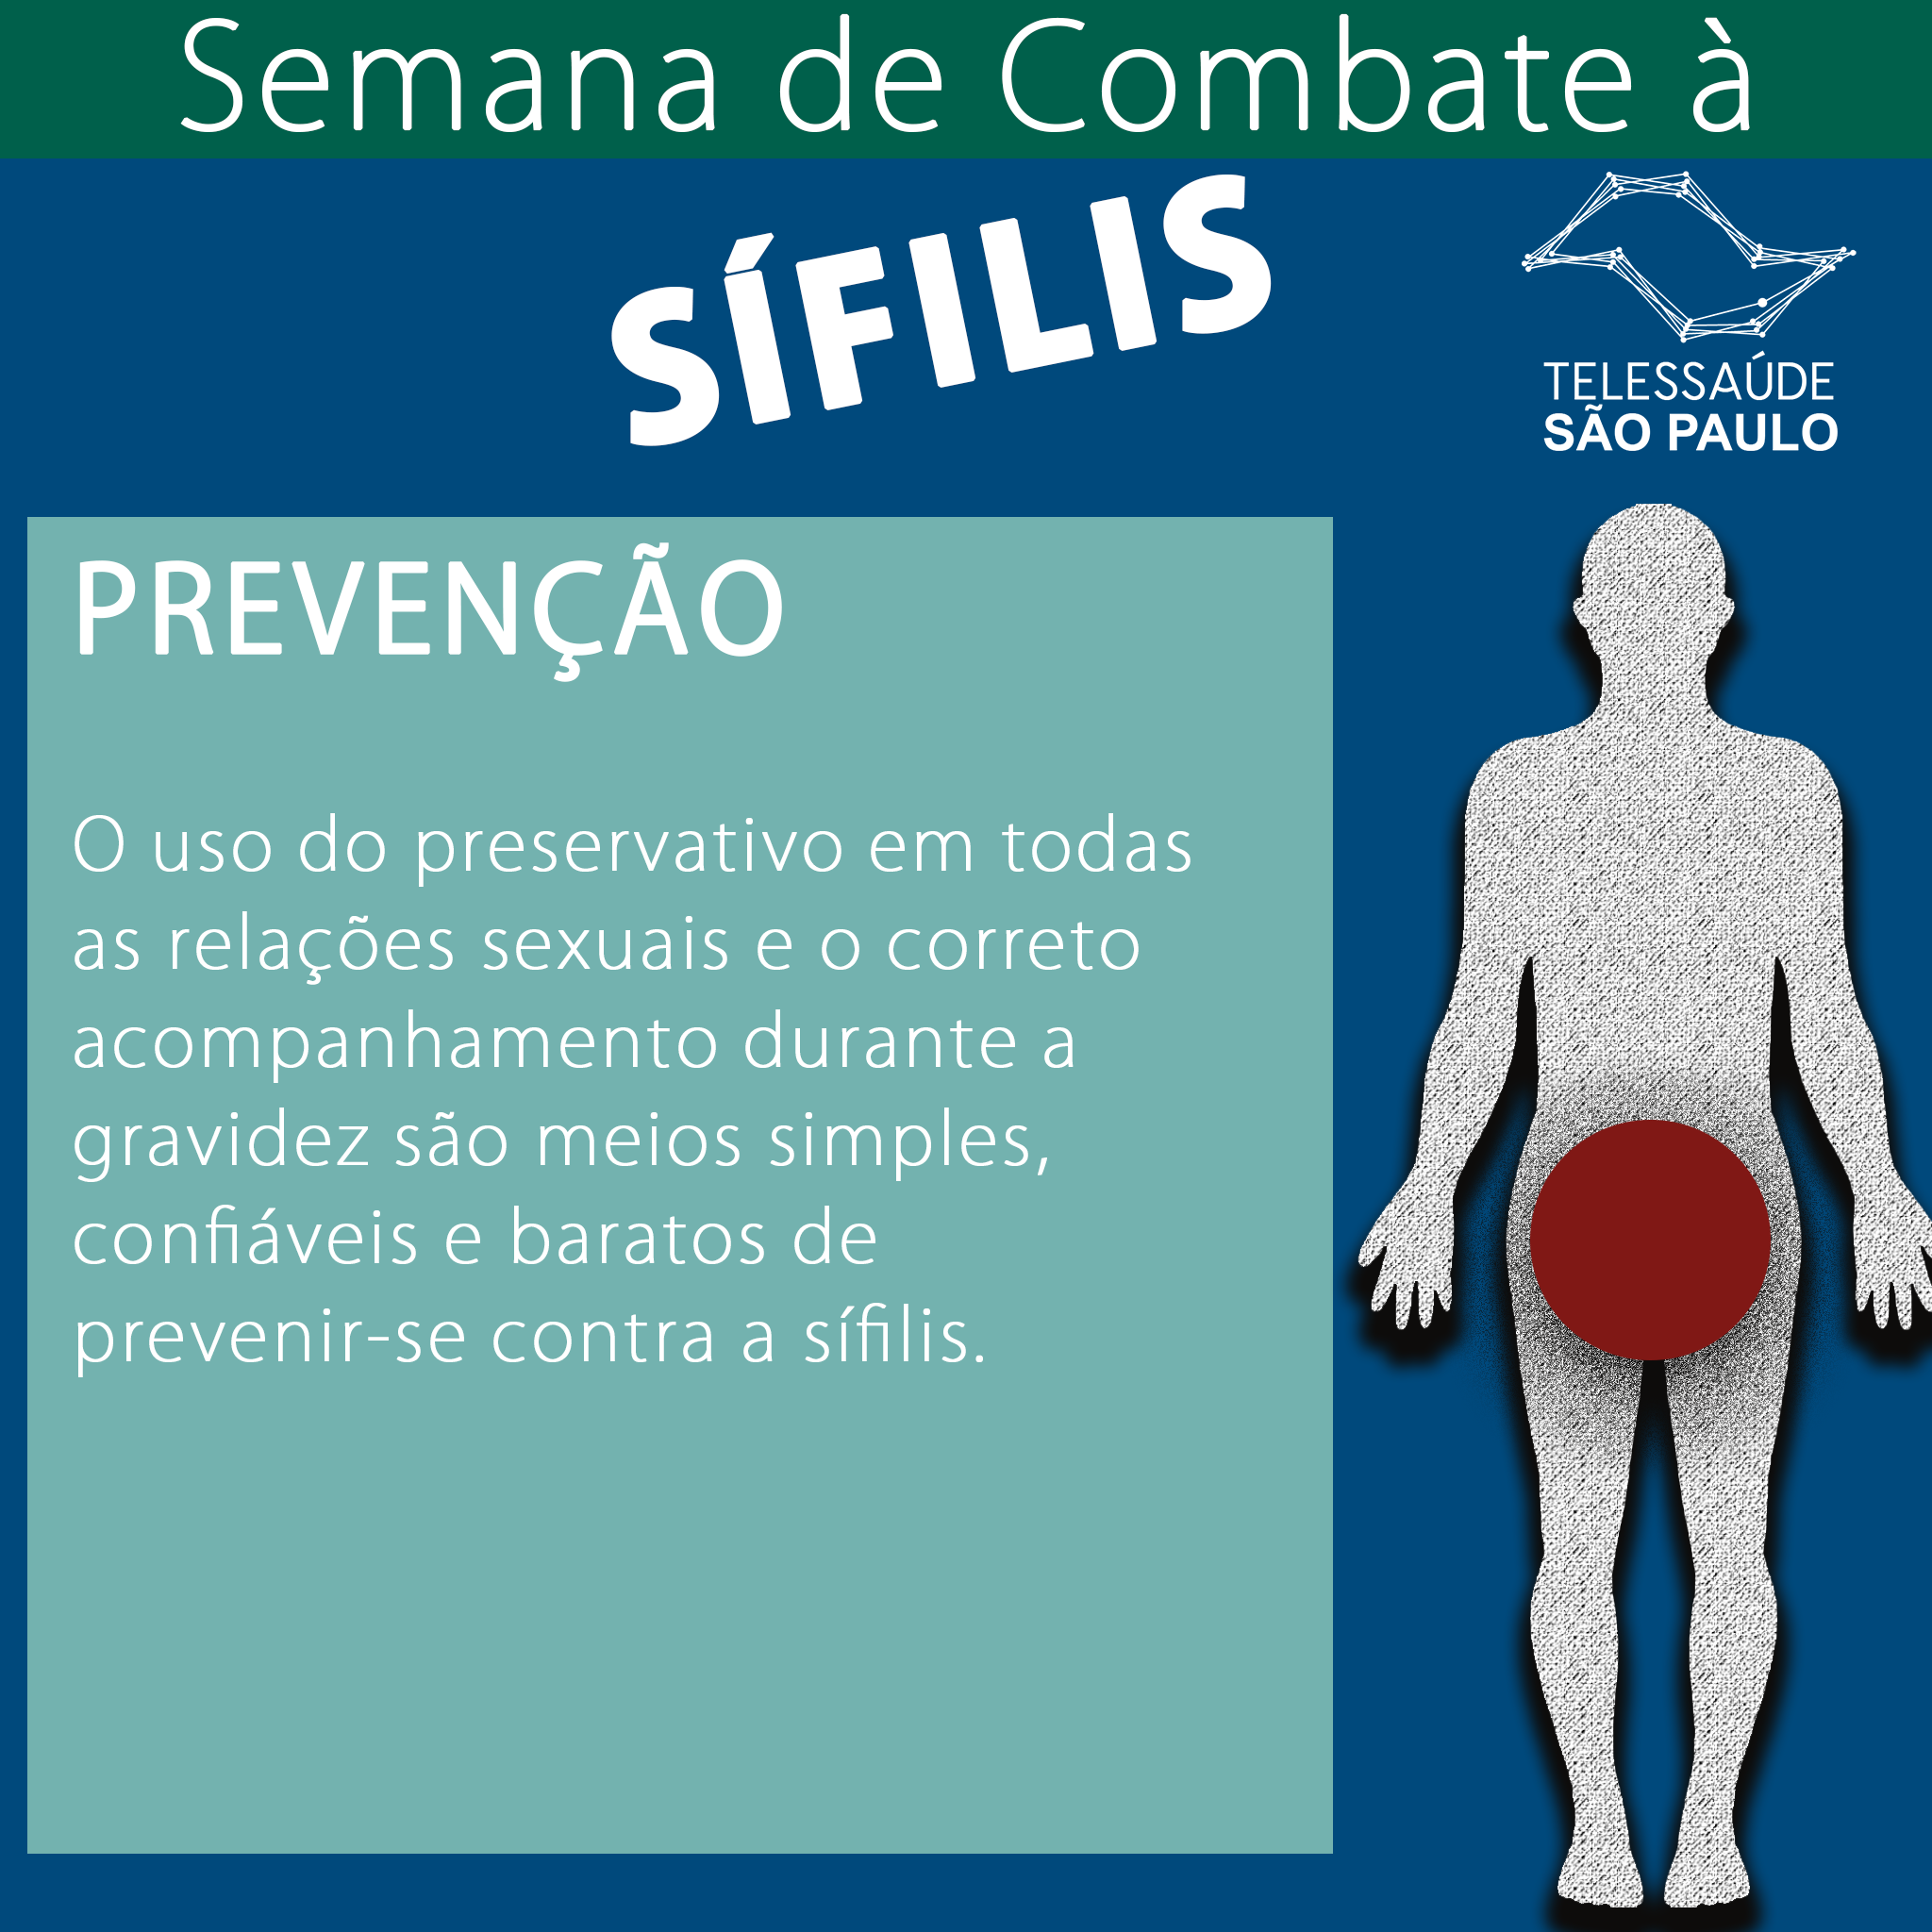 Sífilis. O QUE É ? | by Telessaude São Paulo - Unifesp | Medium